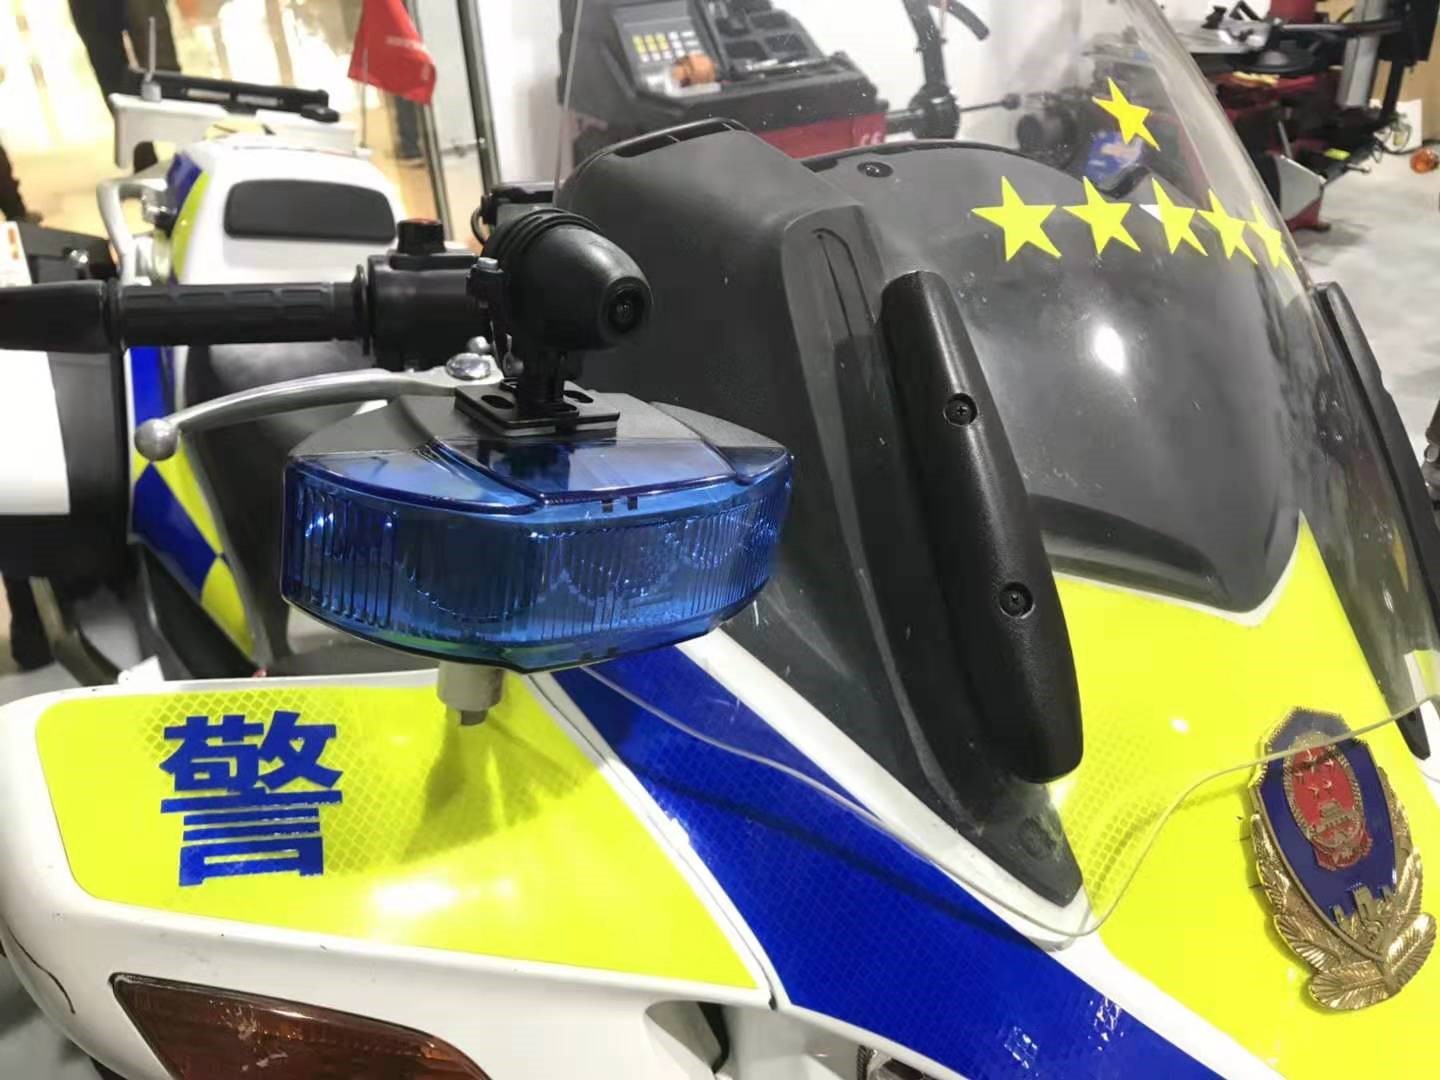 HFK 受邀到警队安装摩托车行车记录仪